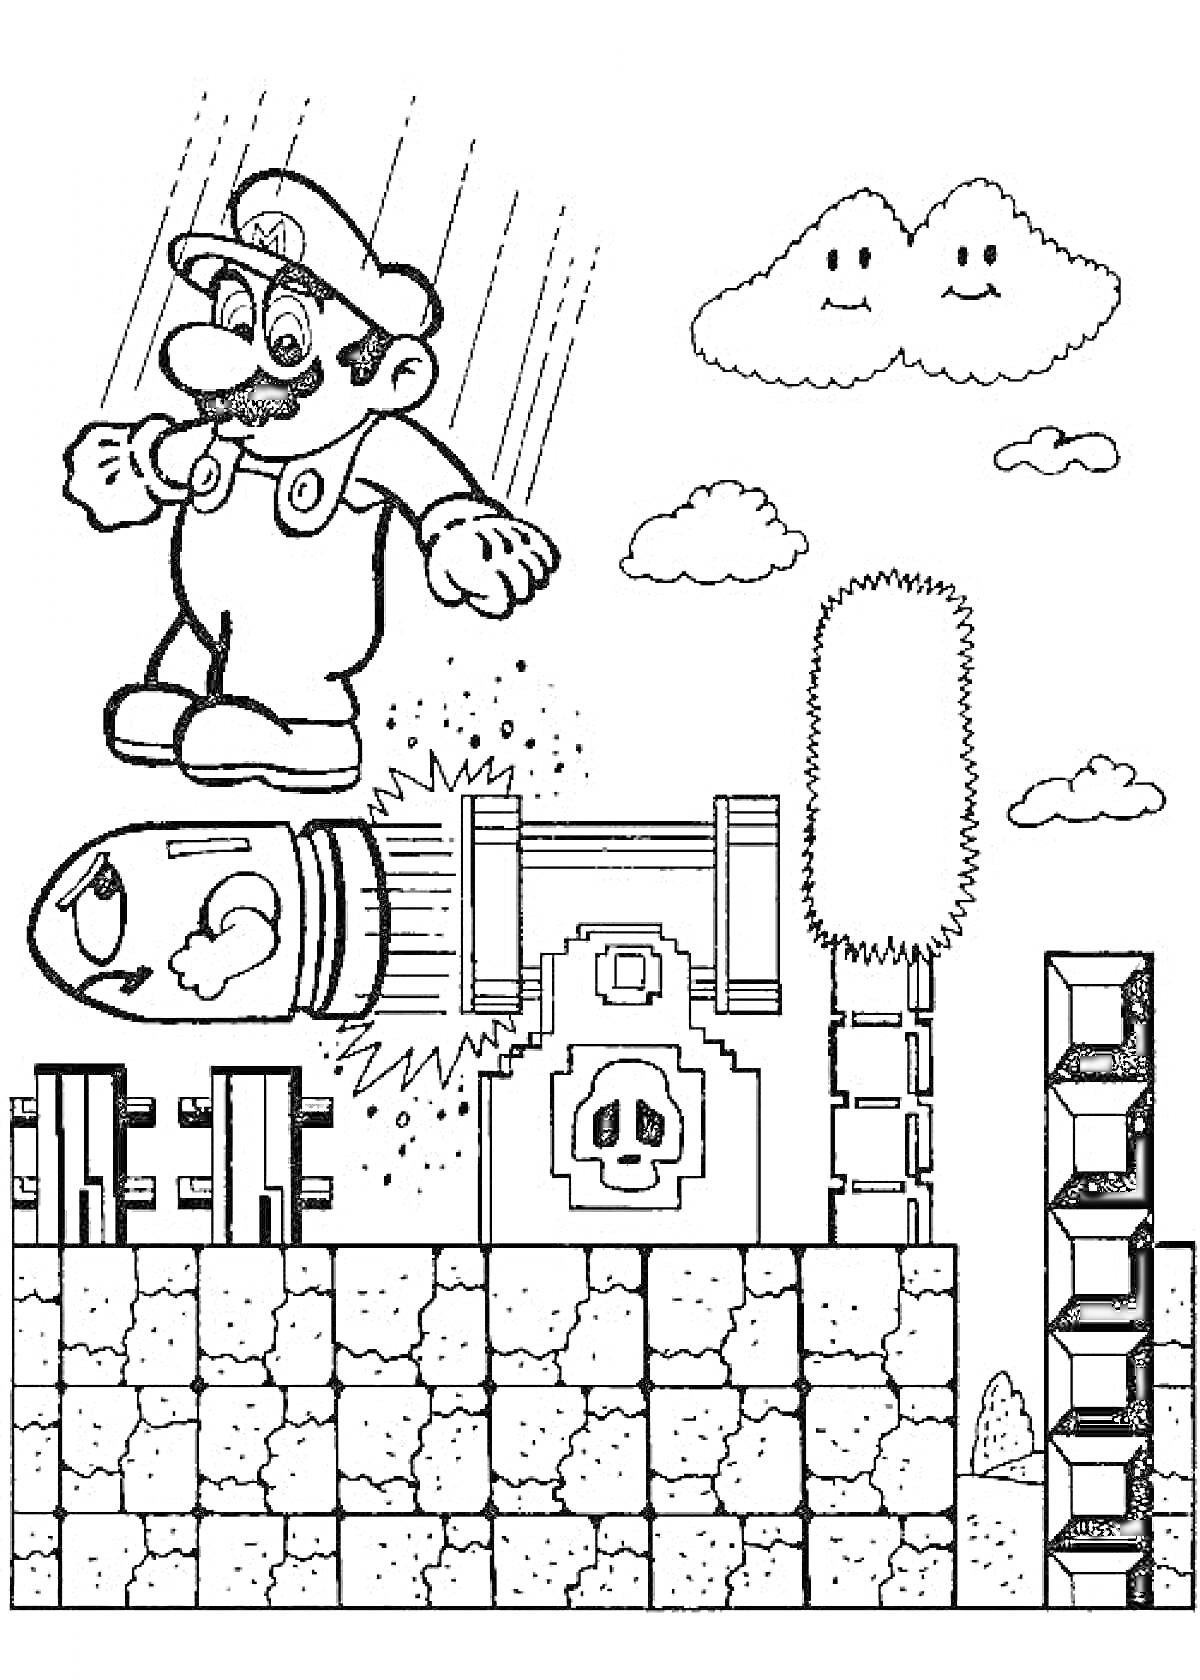 Раскраска Марио на летящей пуле с облаками, кустом, пушкой и кирпичами